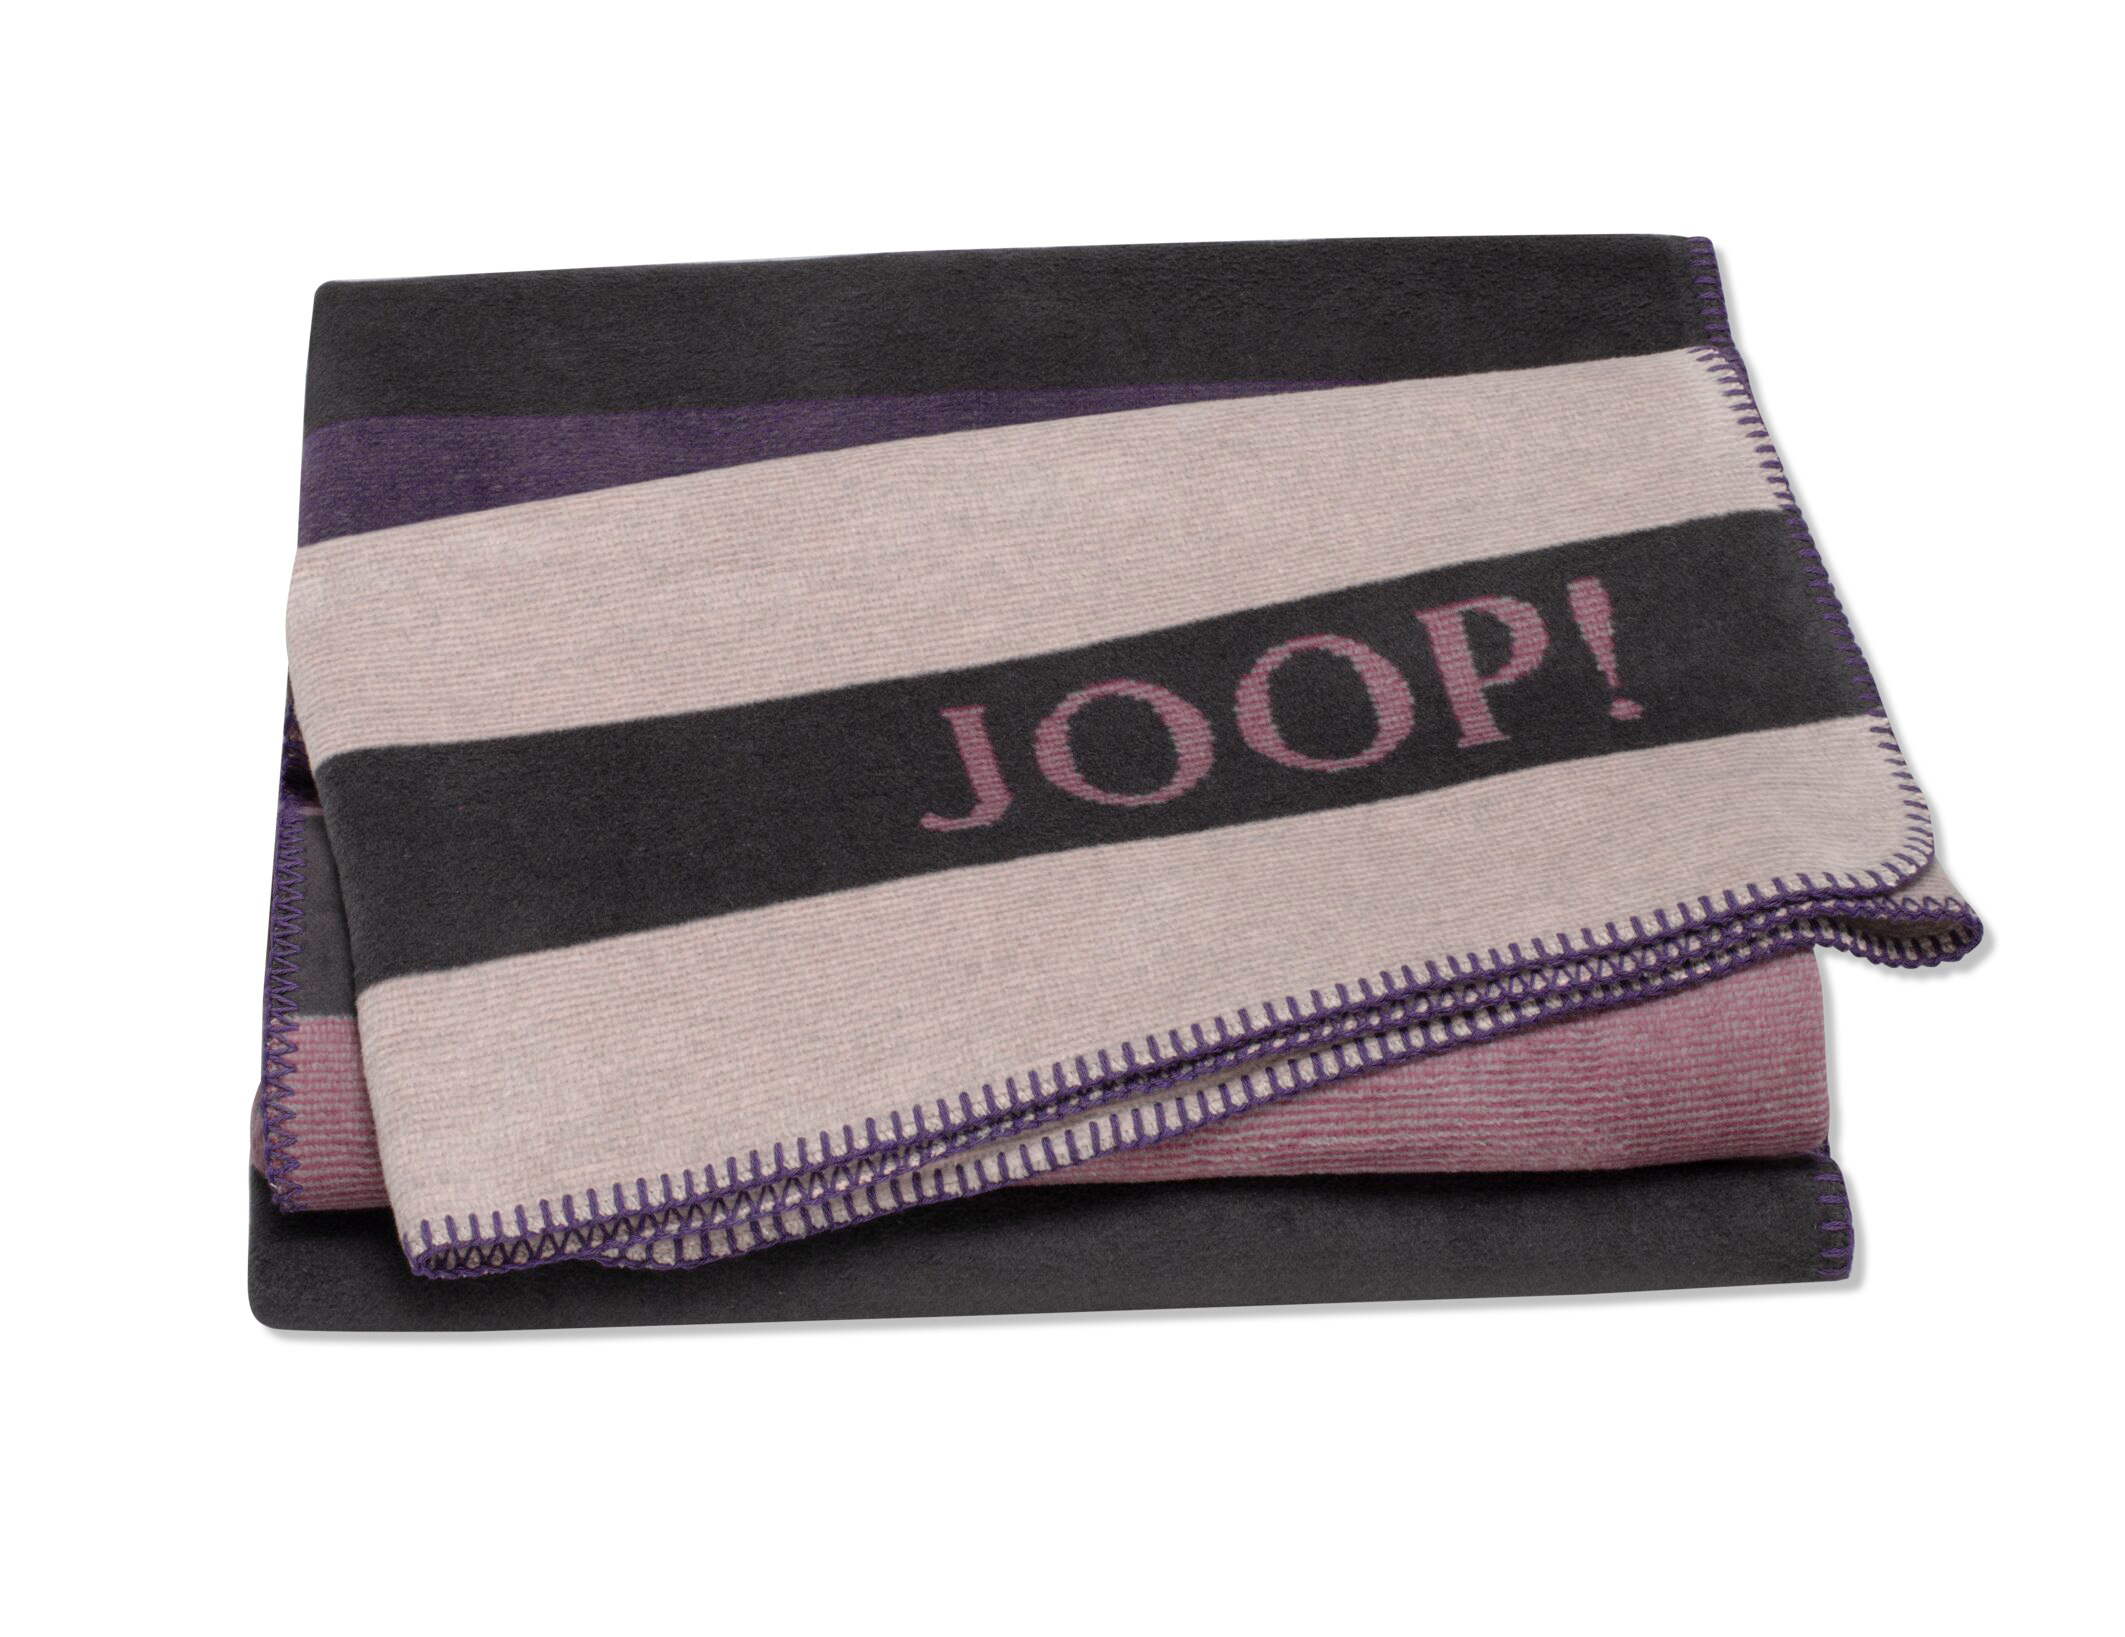 JOOP! Tone - Violett Päckchen